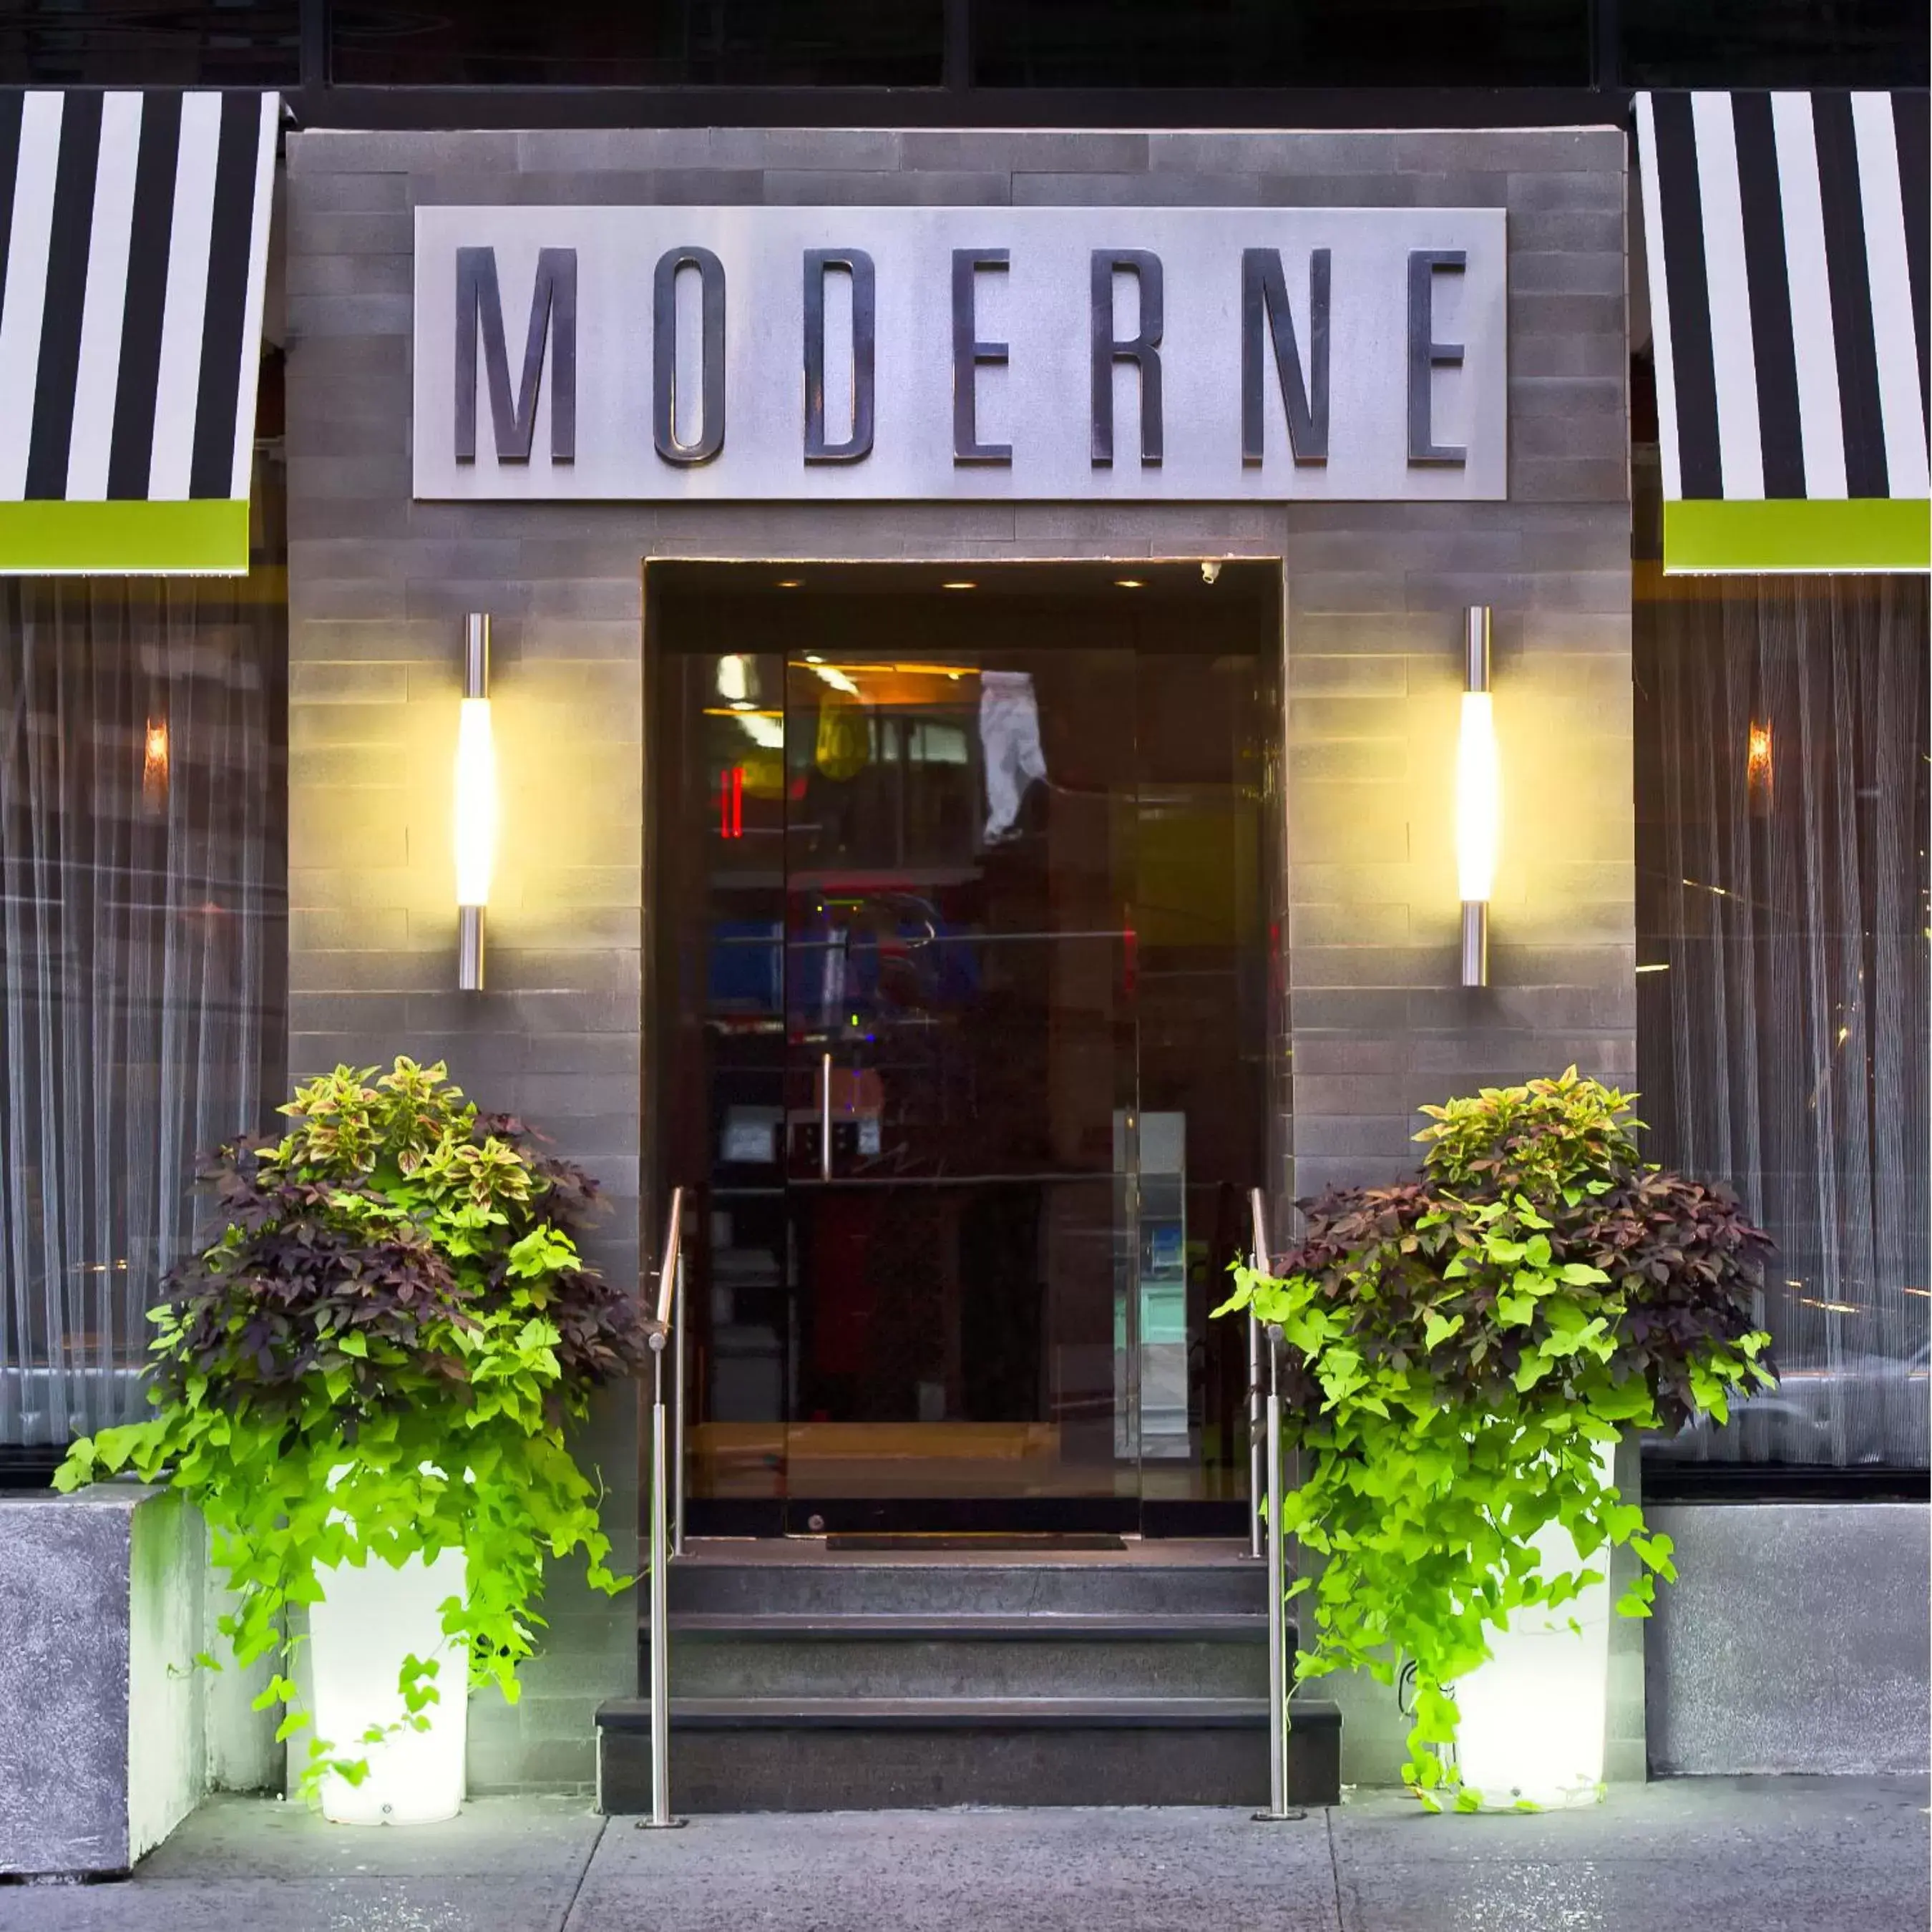 Facade/entrance in Moderne Hotel